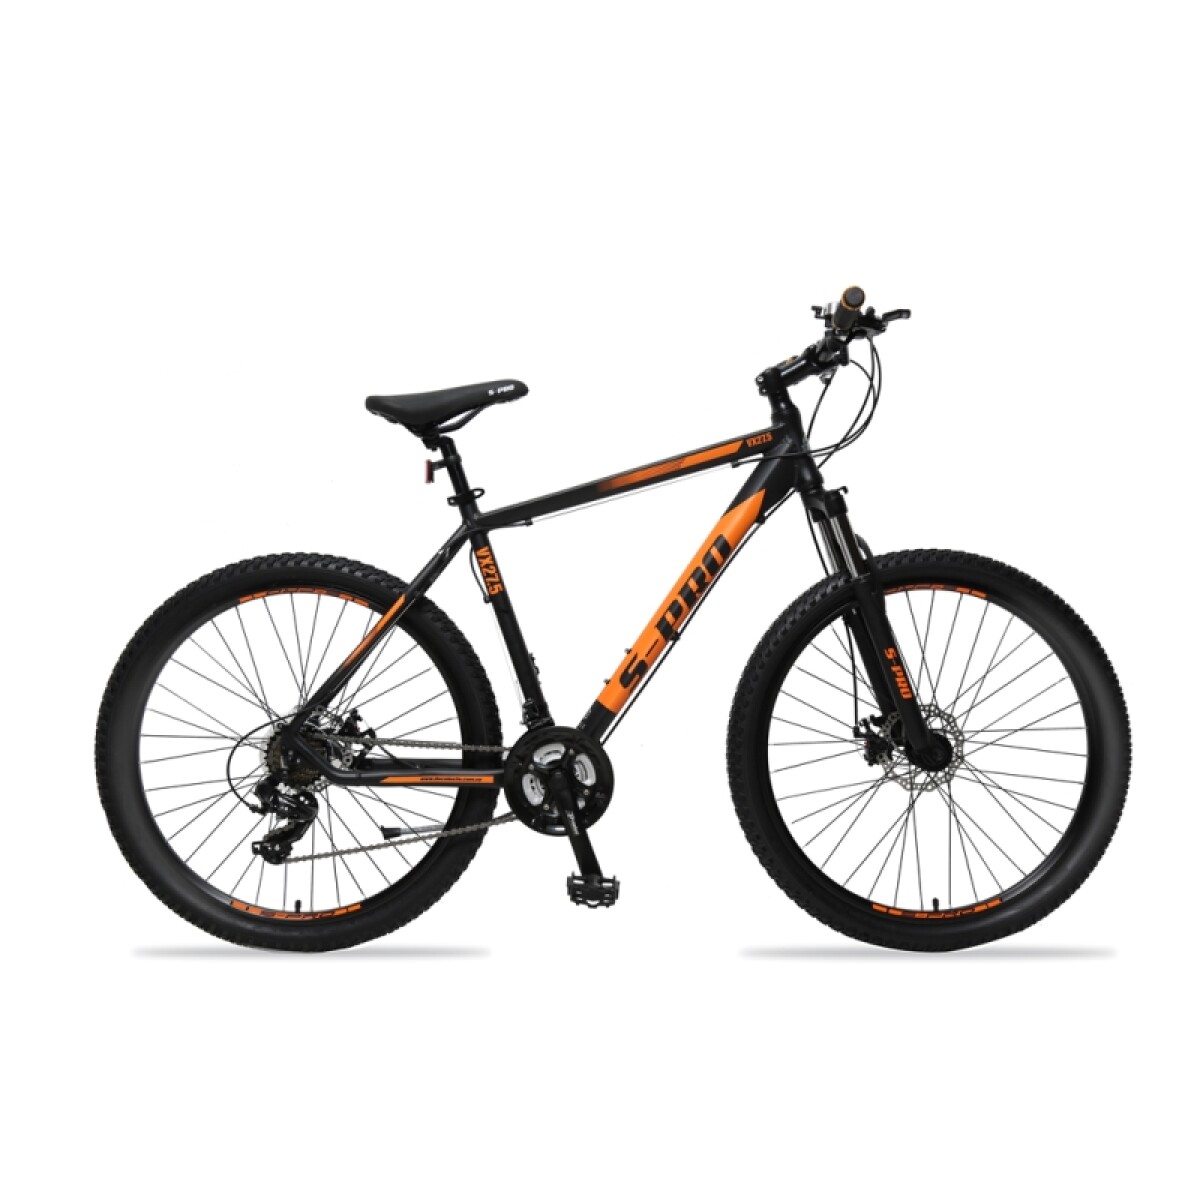 Bicicleta S-pro Mtb Vx R.27.5 - Negro Mate/naranja 